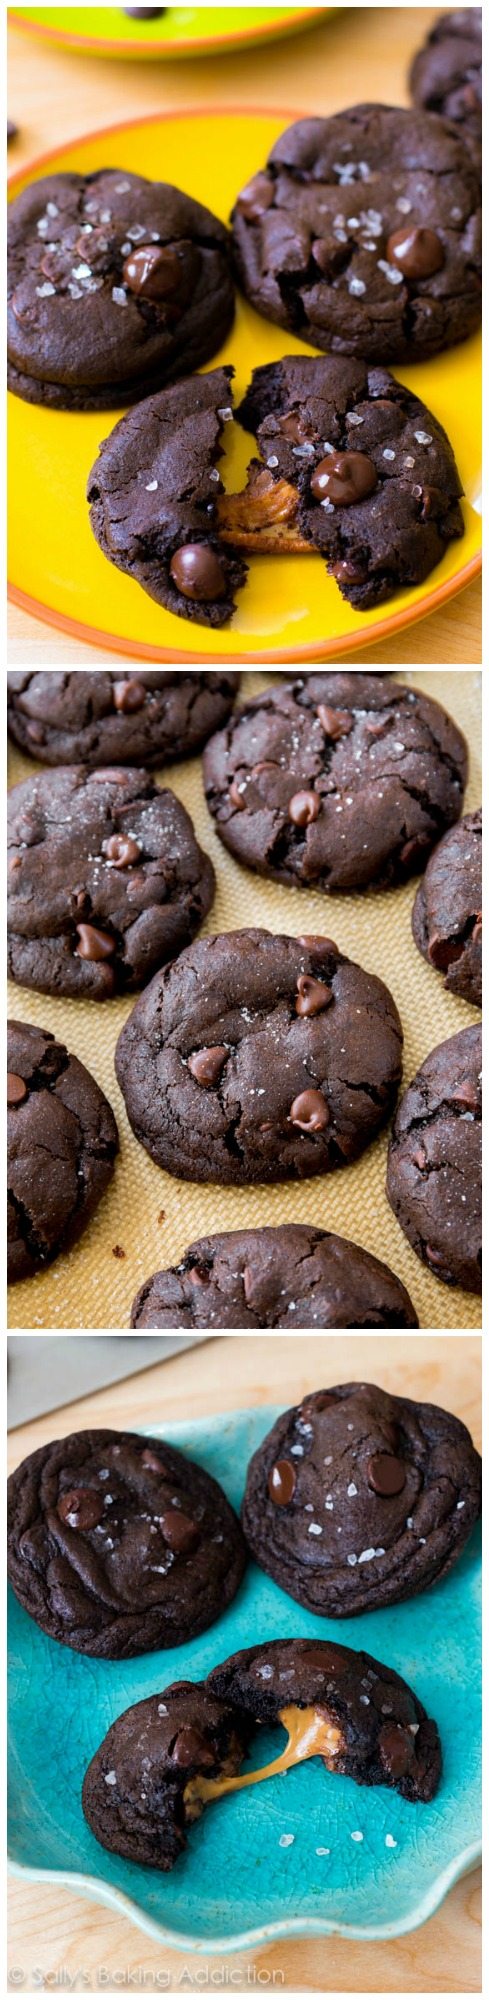 Biscuits au chocolat noir au caramel salé